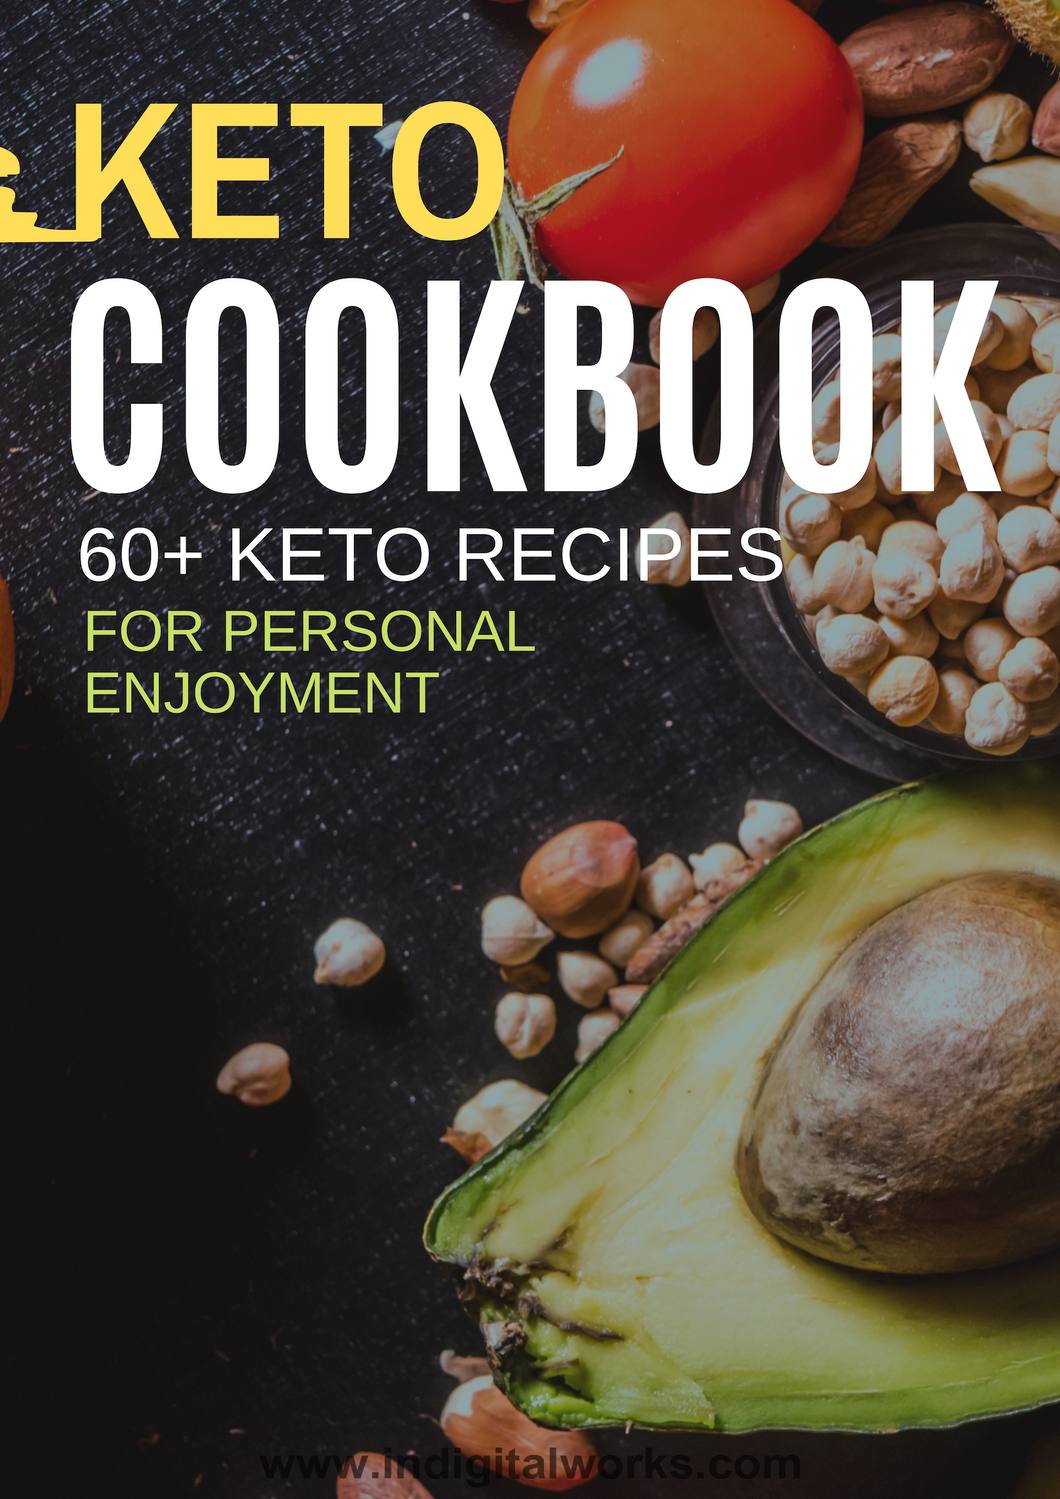 KETO COOKBOOK 60+ KETO RECIPES